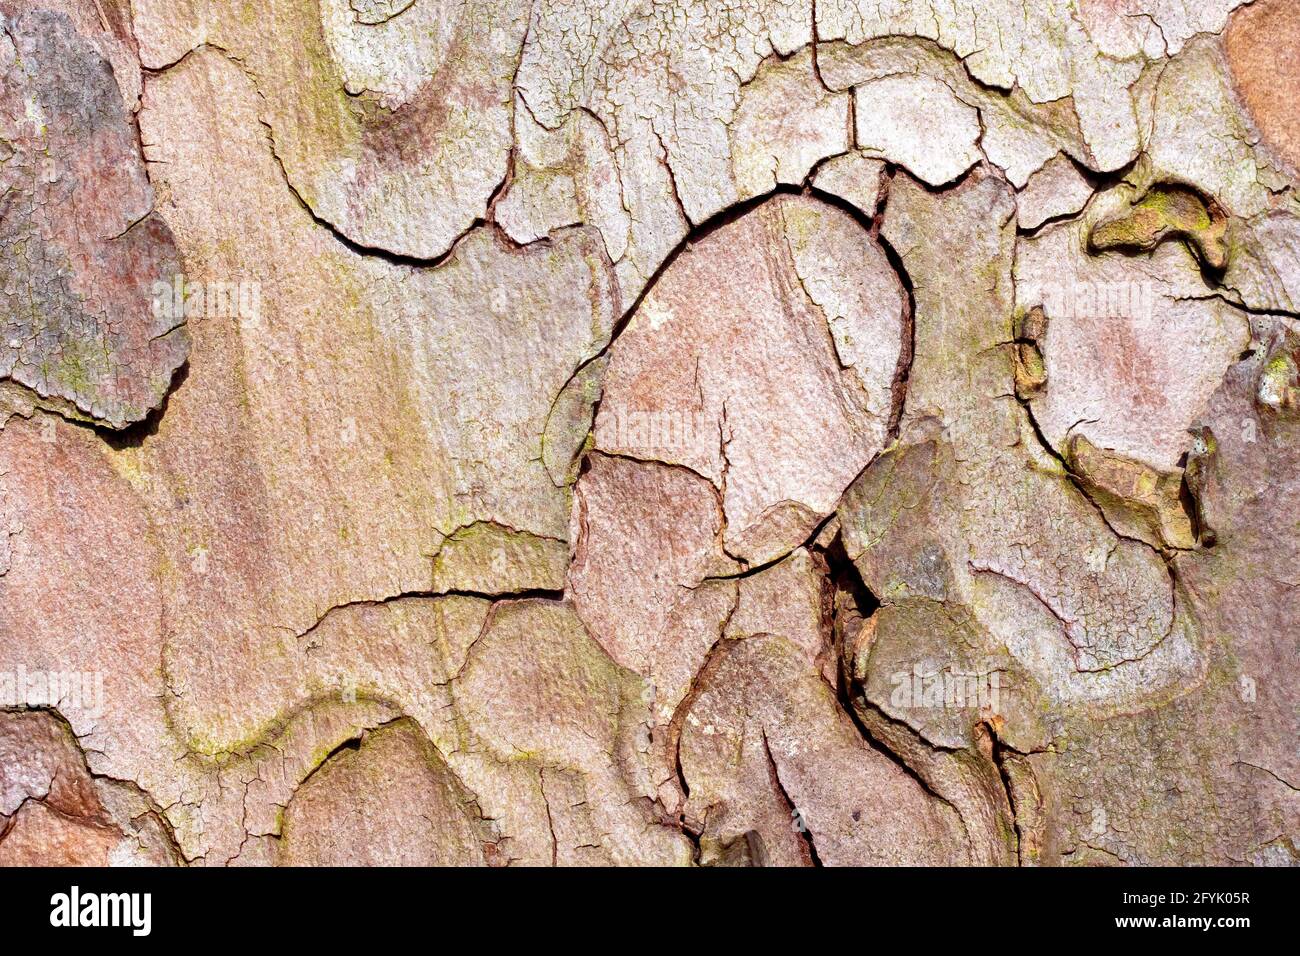 Pino di Scot (pinus sylvestris), primo piano che mostra la struttura e il dettaglio del modello nella corteccia dell'albero. Foto Stock